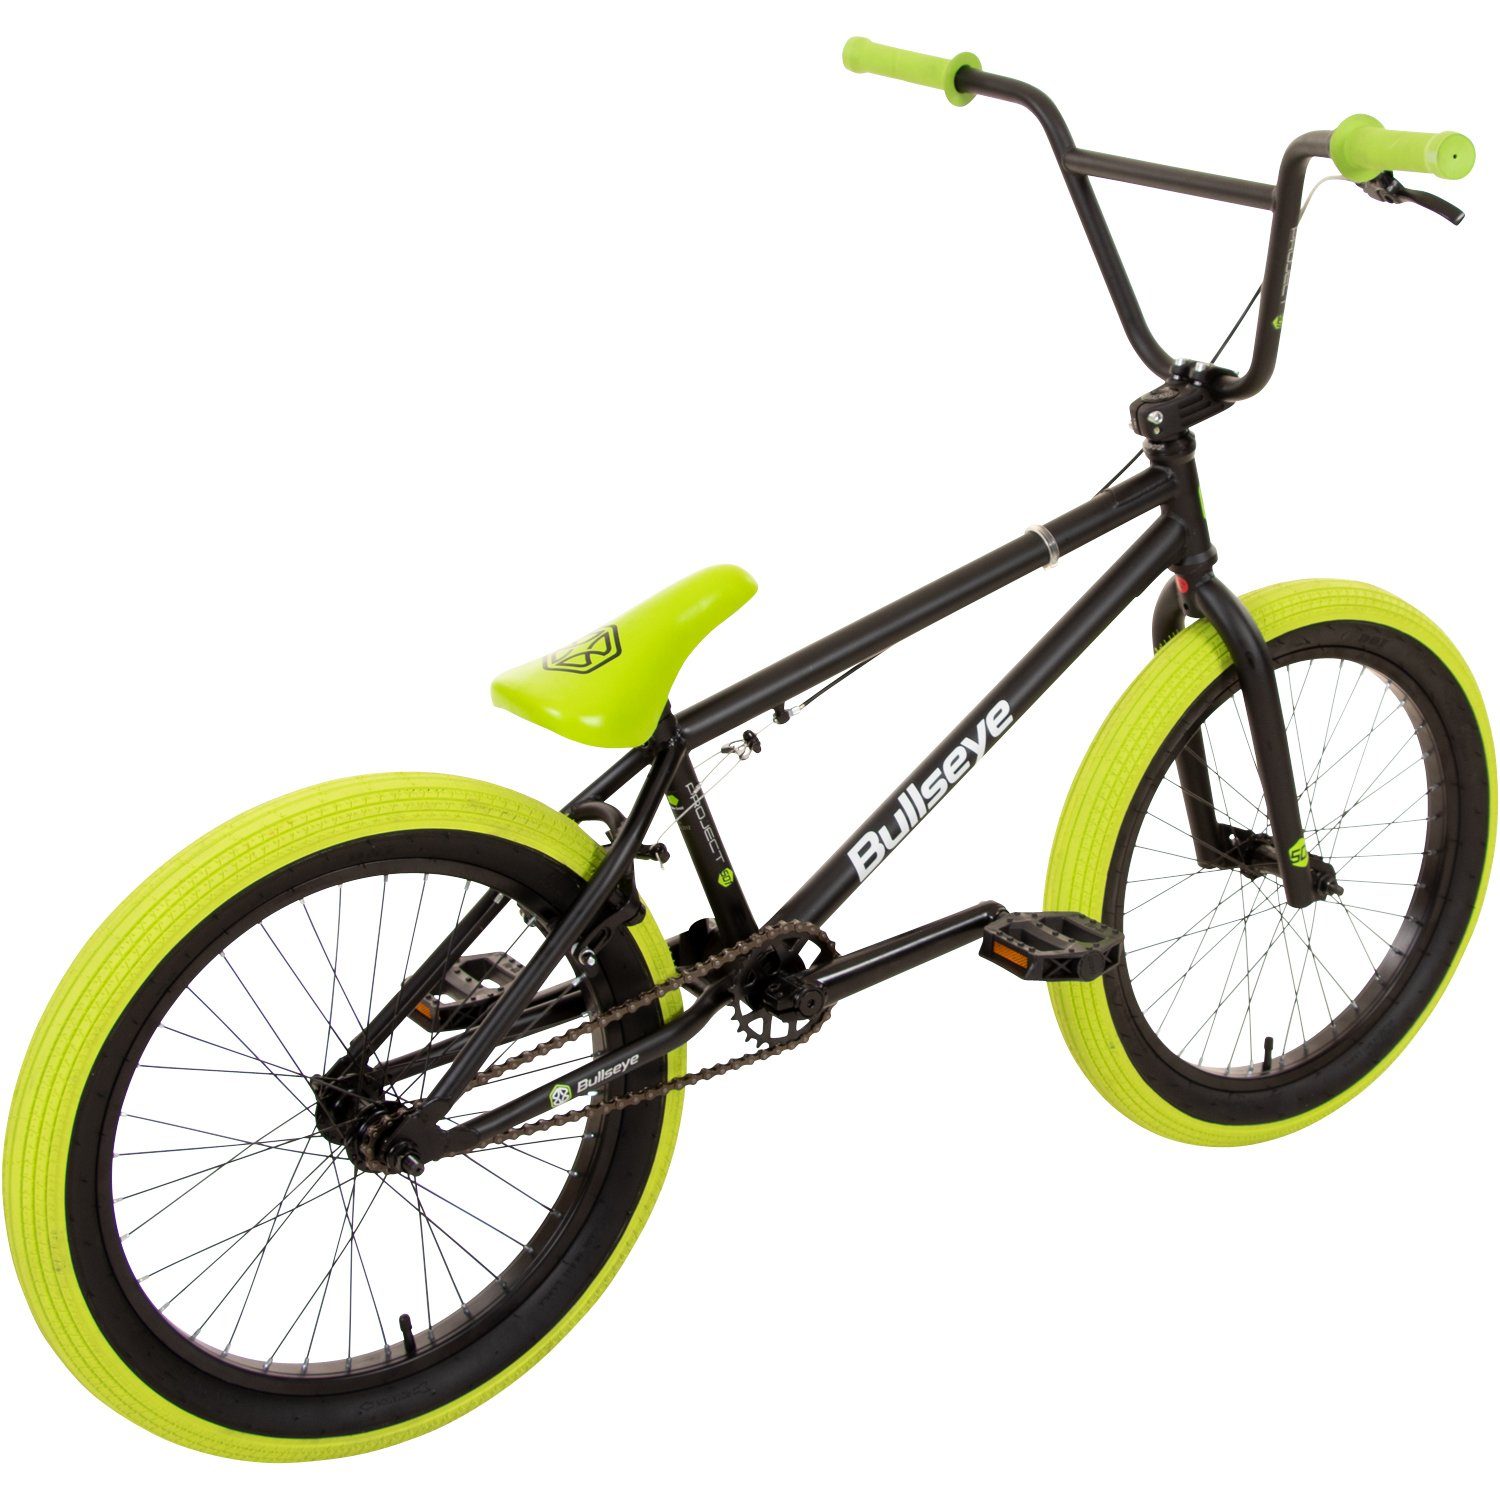 BMX 501, cm 145 Jugendliche Erwachsene ohne bullseye schwarz/grün - Gang, Pegs 175 1 Fahrrad unisex BMX-Rad mit Schaltung, Project